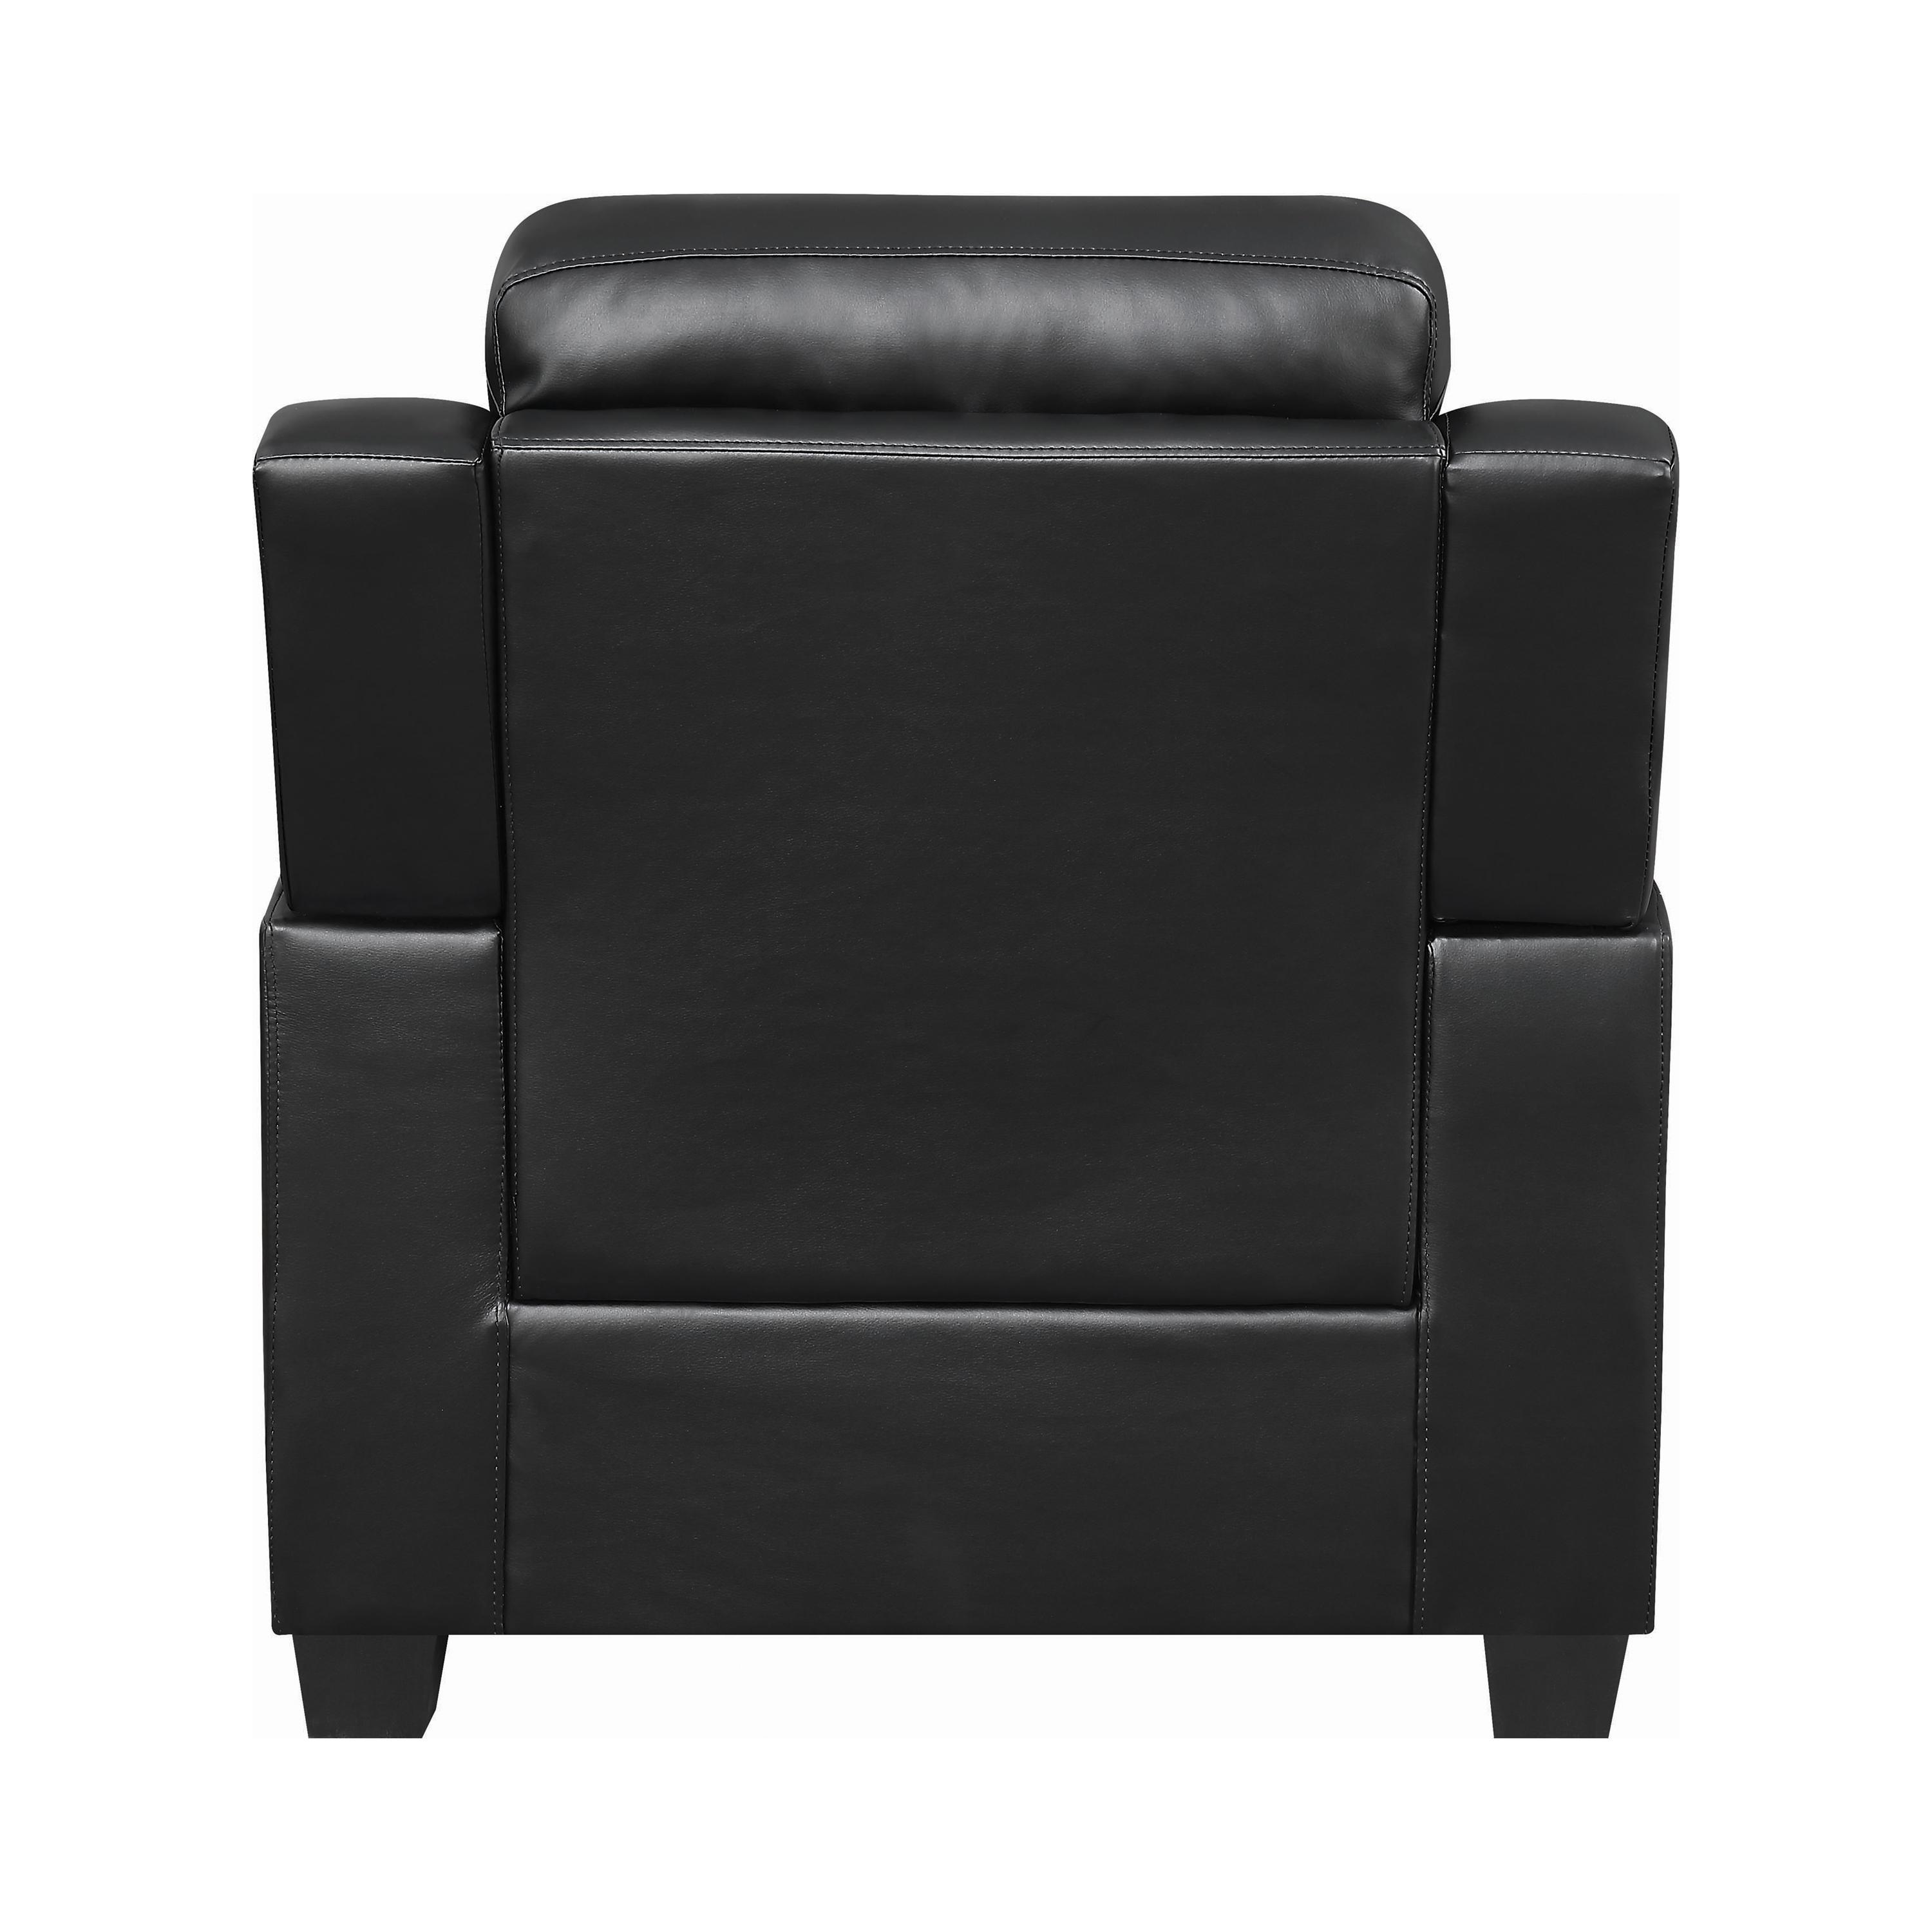 

    
Coaster 506553 Finley Arm Chair Black 506553
